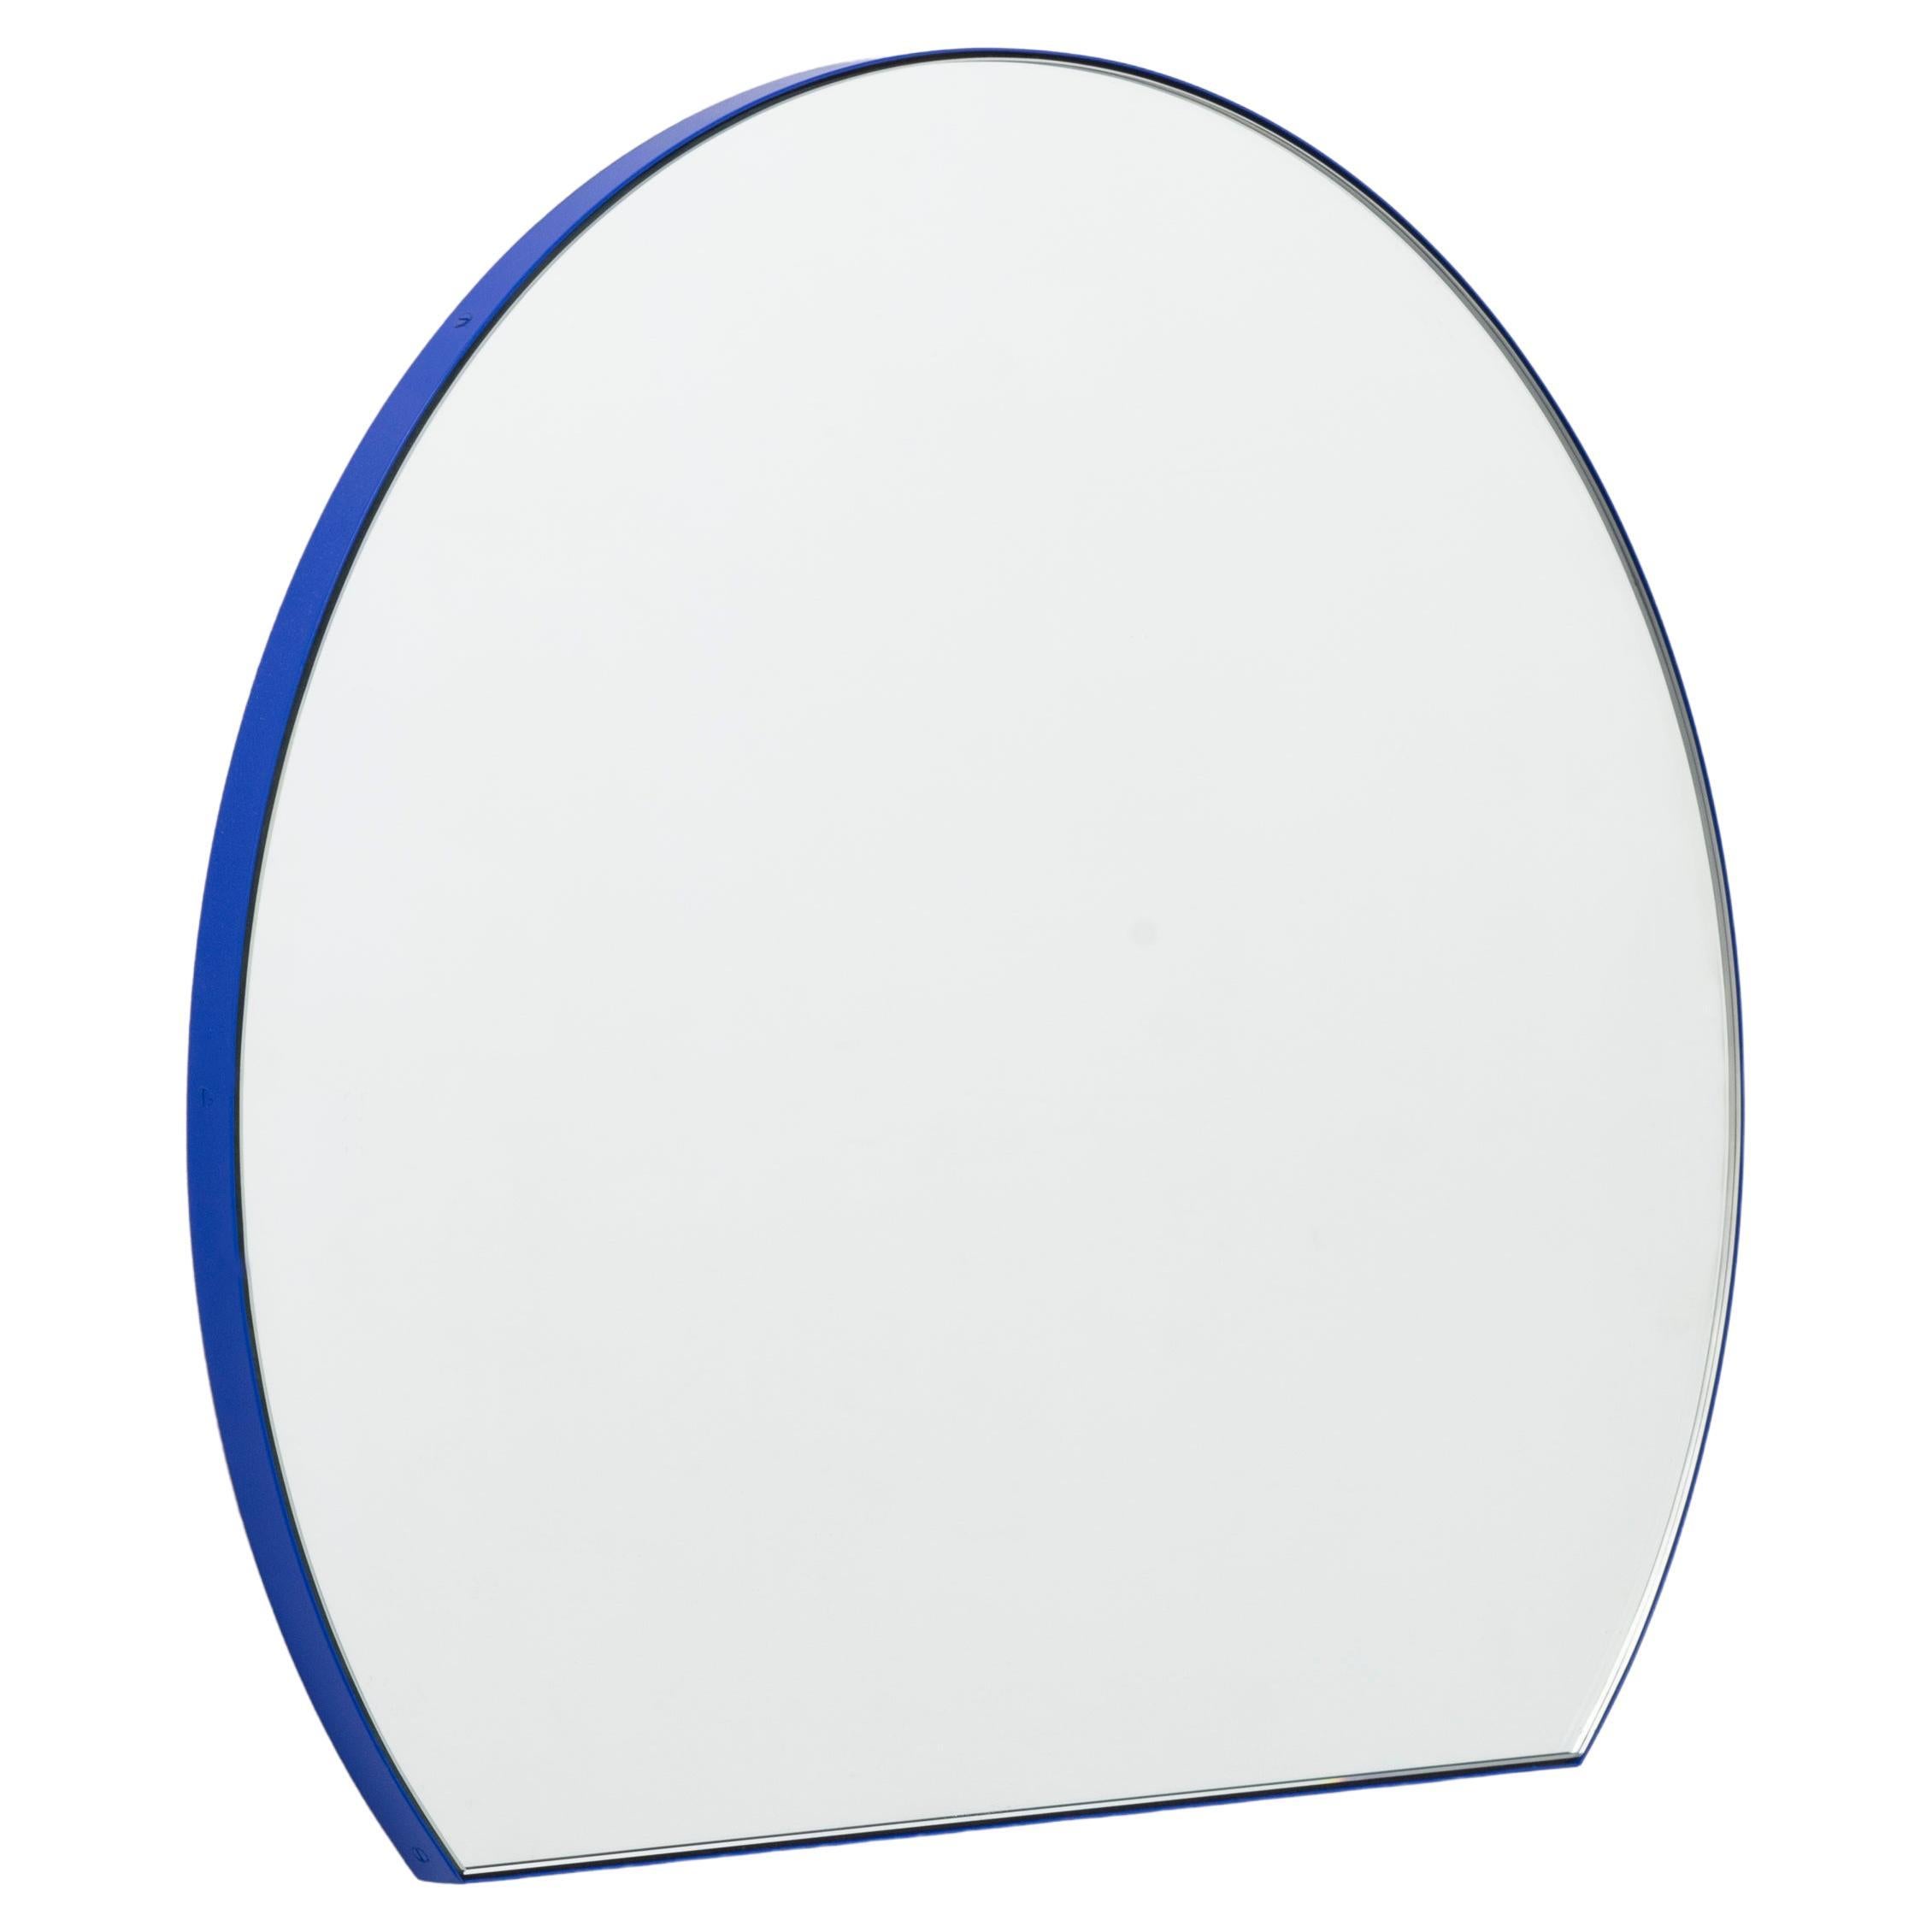 Orbis Trecus Abgeschnittener Runder Moderner Spiegel mit blauem Rahmen, groß